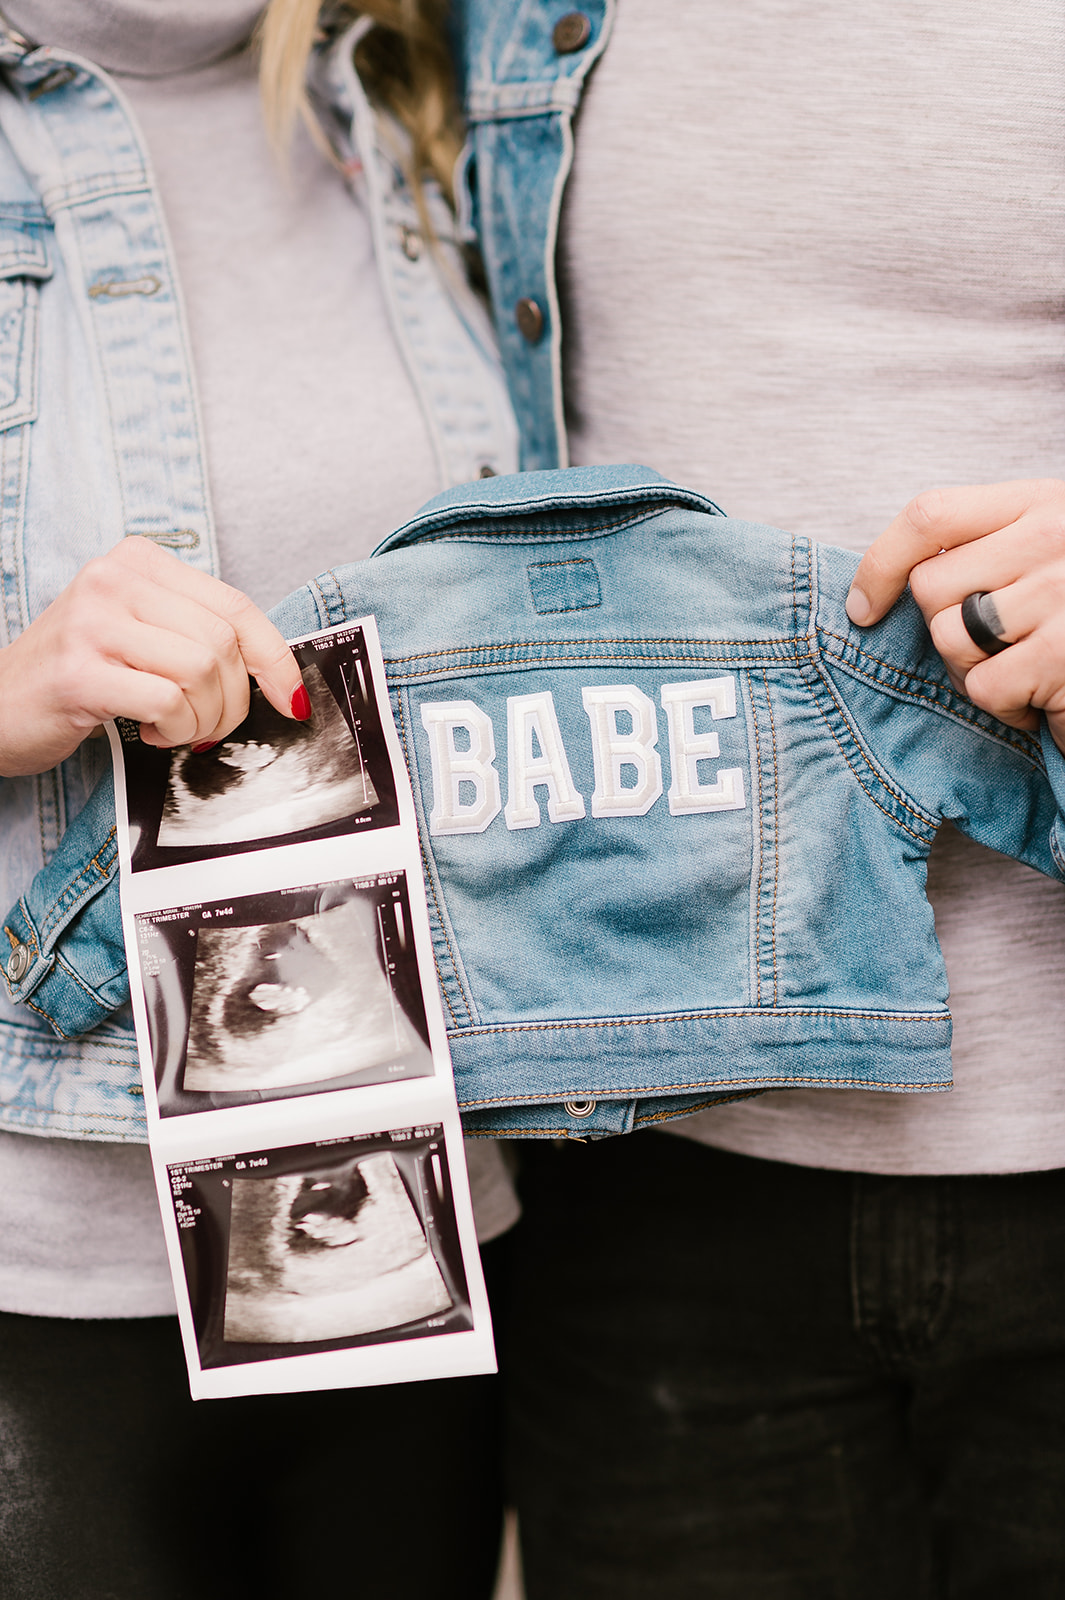 We are Having a Baby! Little Schroeder Due June 2021 | Miranda Schroeder Blog

Pregnancy Announcement 

www.mirandaschroeder.com